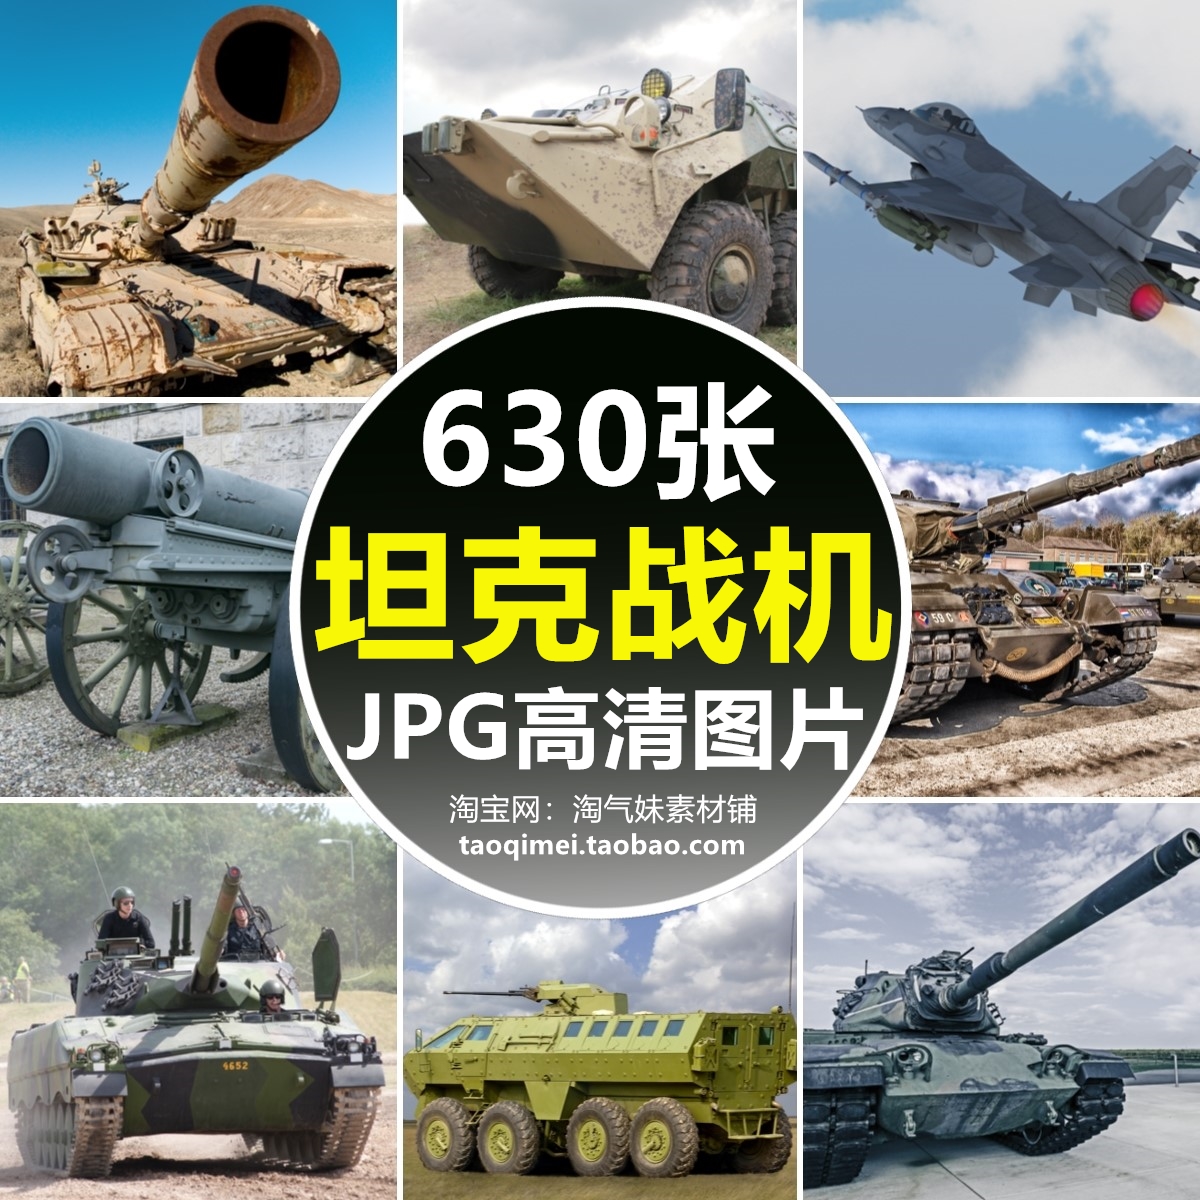 高清JPG坦克战机图片装甲车大炮军舰战斗机陆战军事装备主题素材